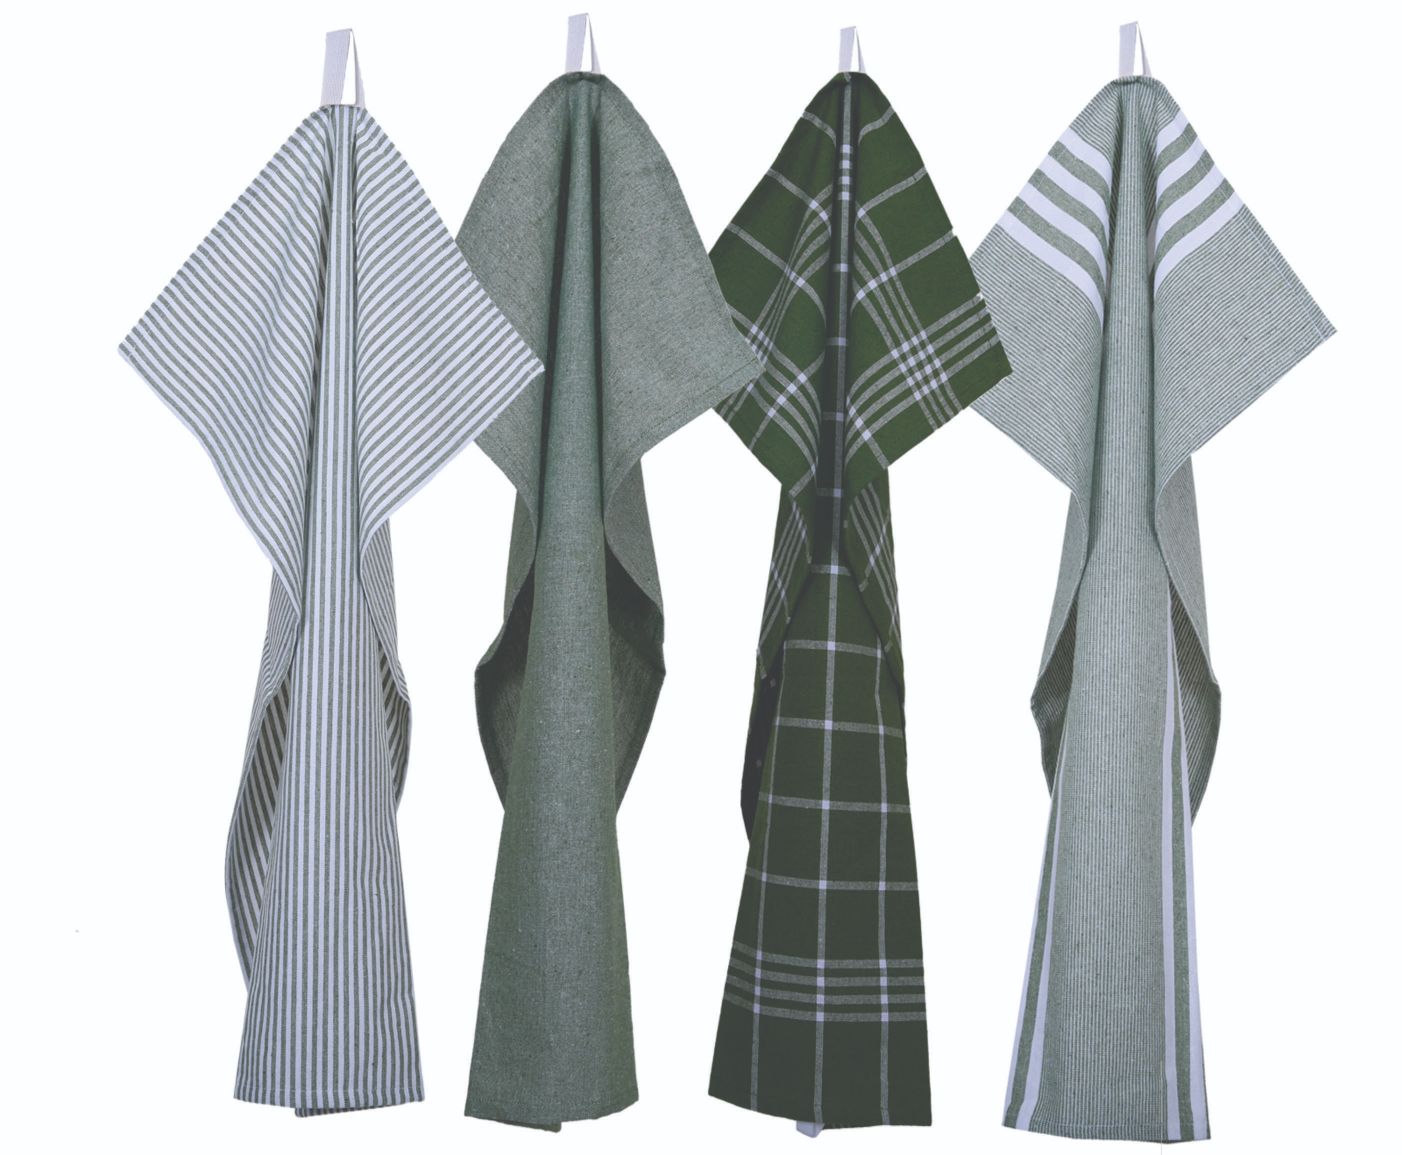 Kökshandduk från Classic textile i återvunna textilier. Färg: Grön och vitrandig.